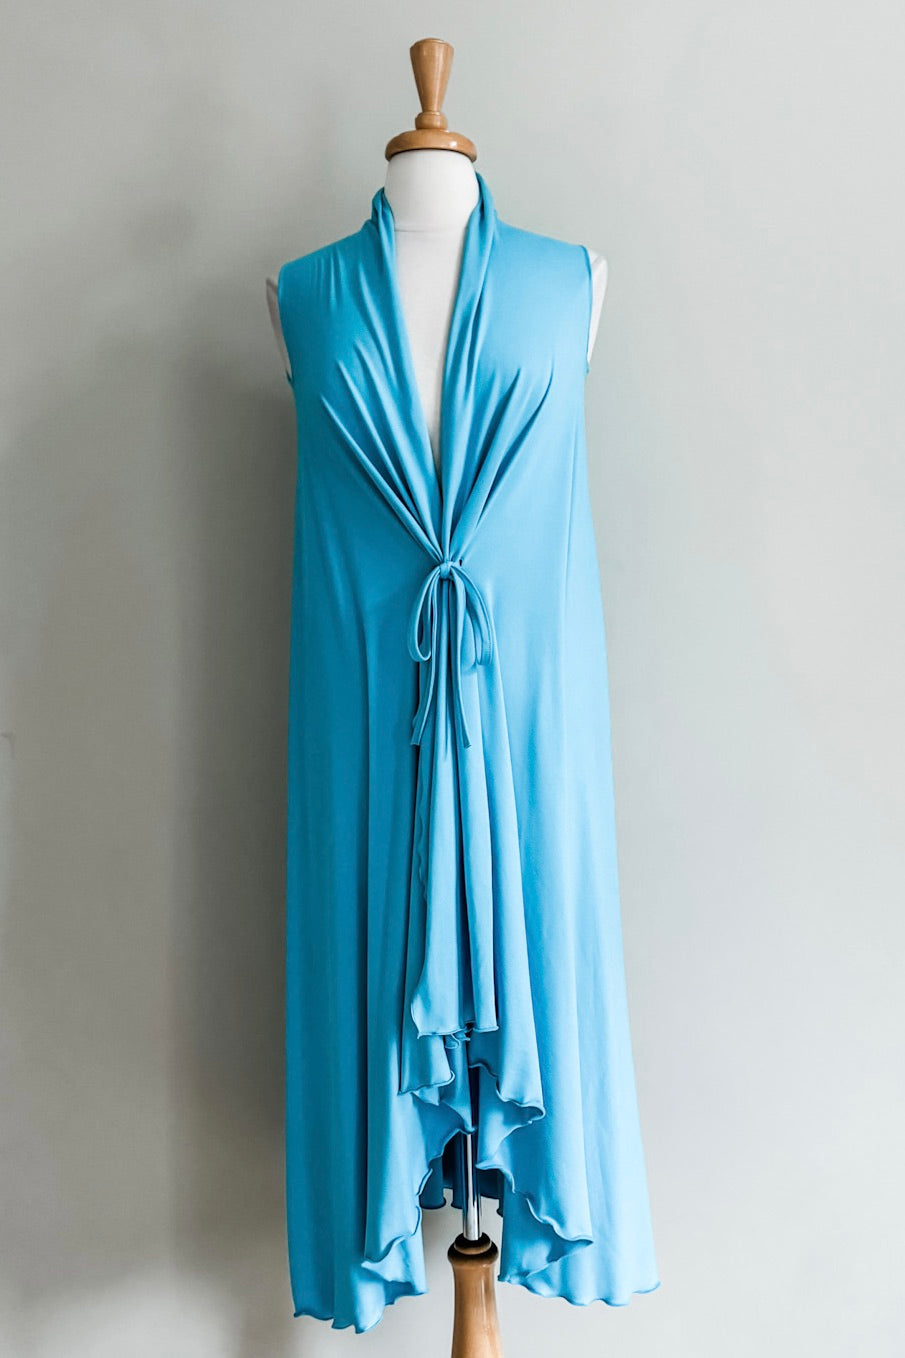 Goddess Dress from Diane Kroe